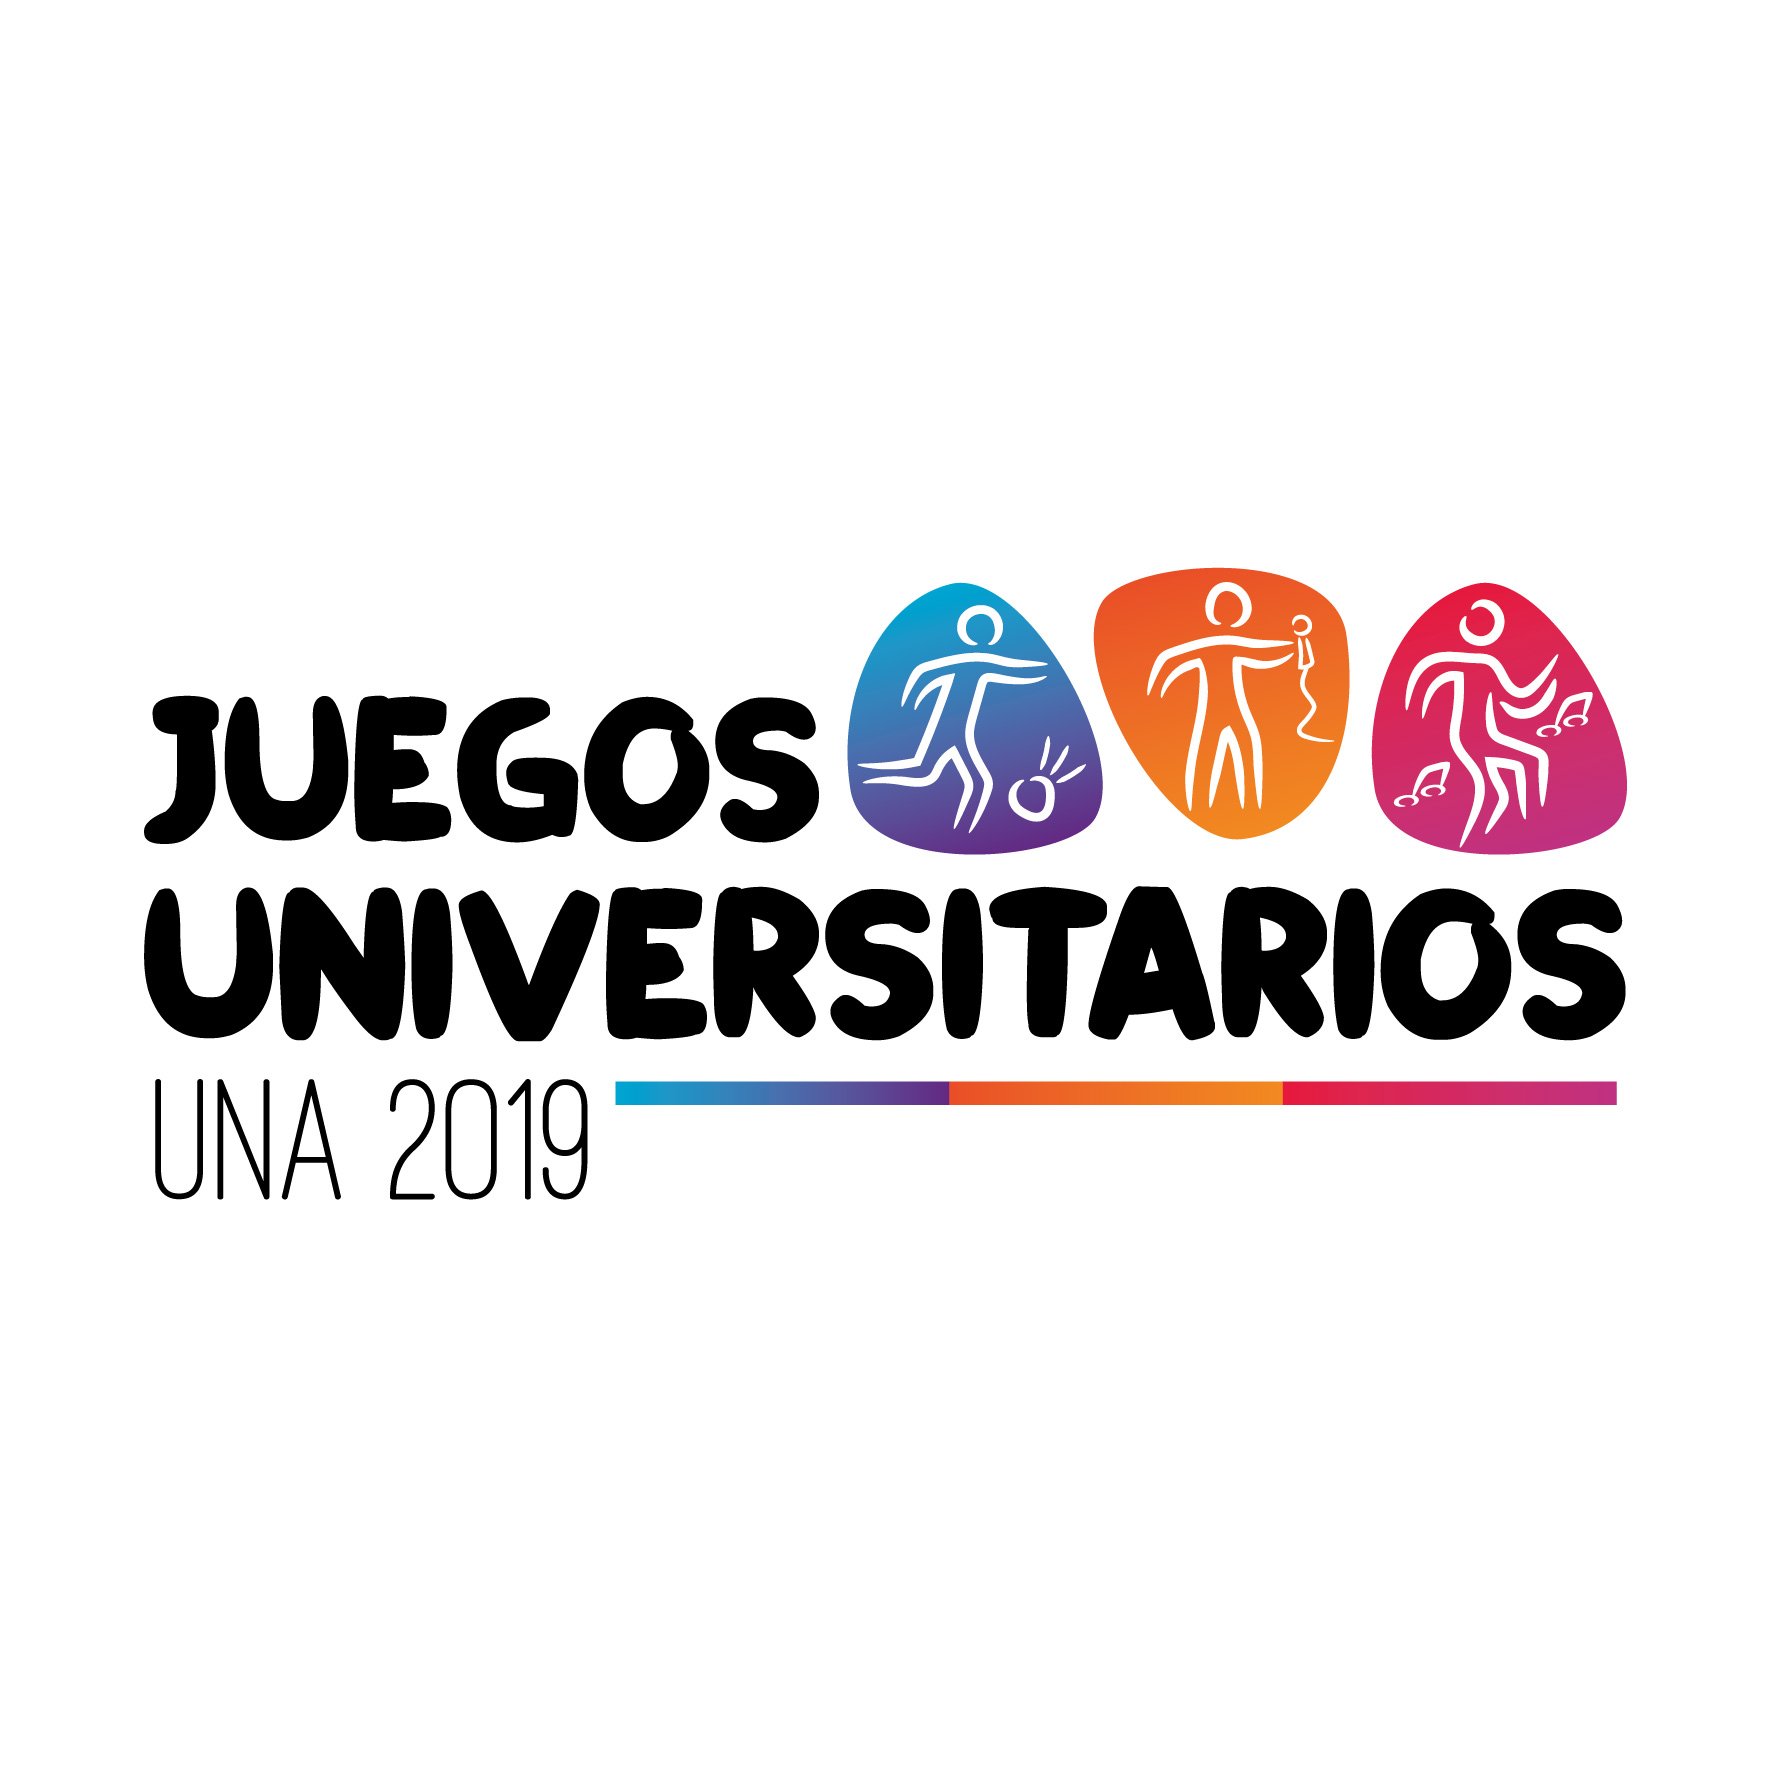 Evento deportivo, artístico y cultural organizado por la Federación de Estudiantes de la Universidad Nacional de Asunción.